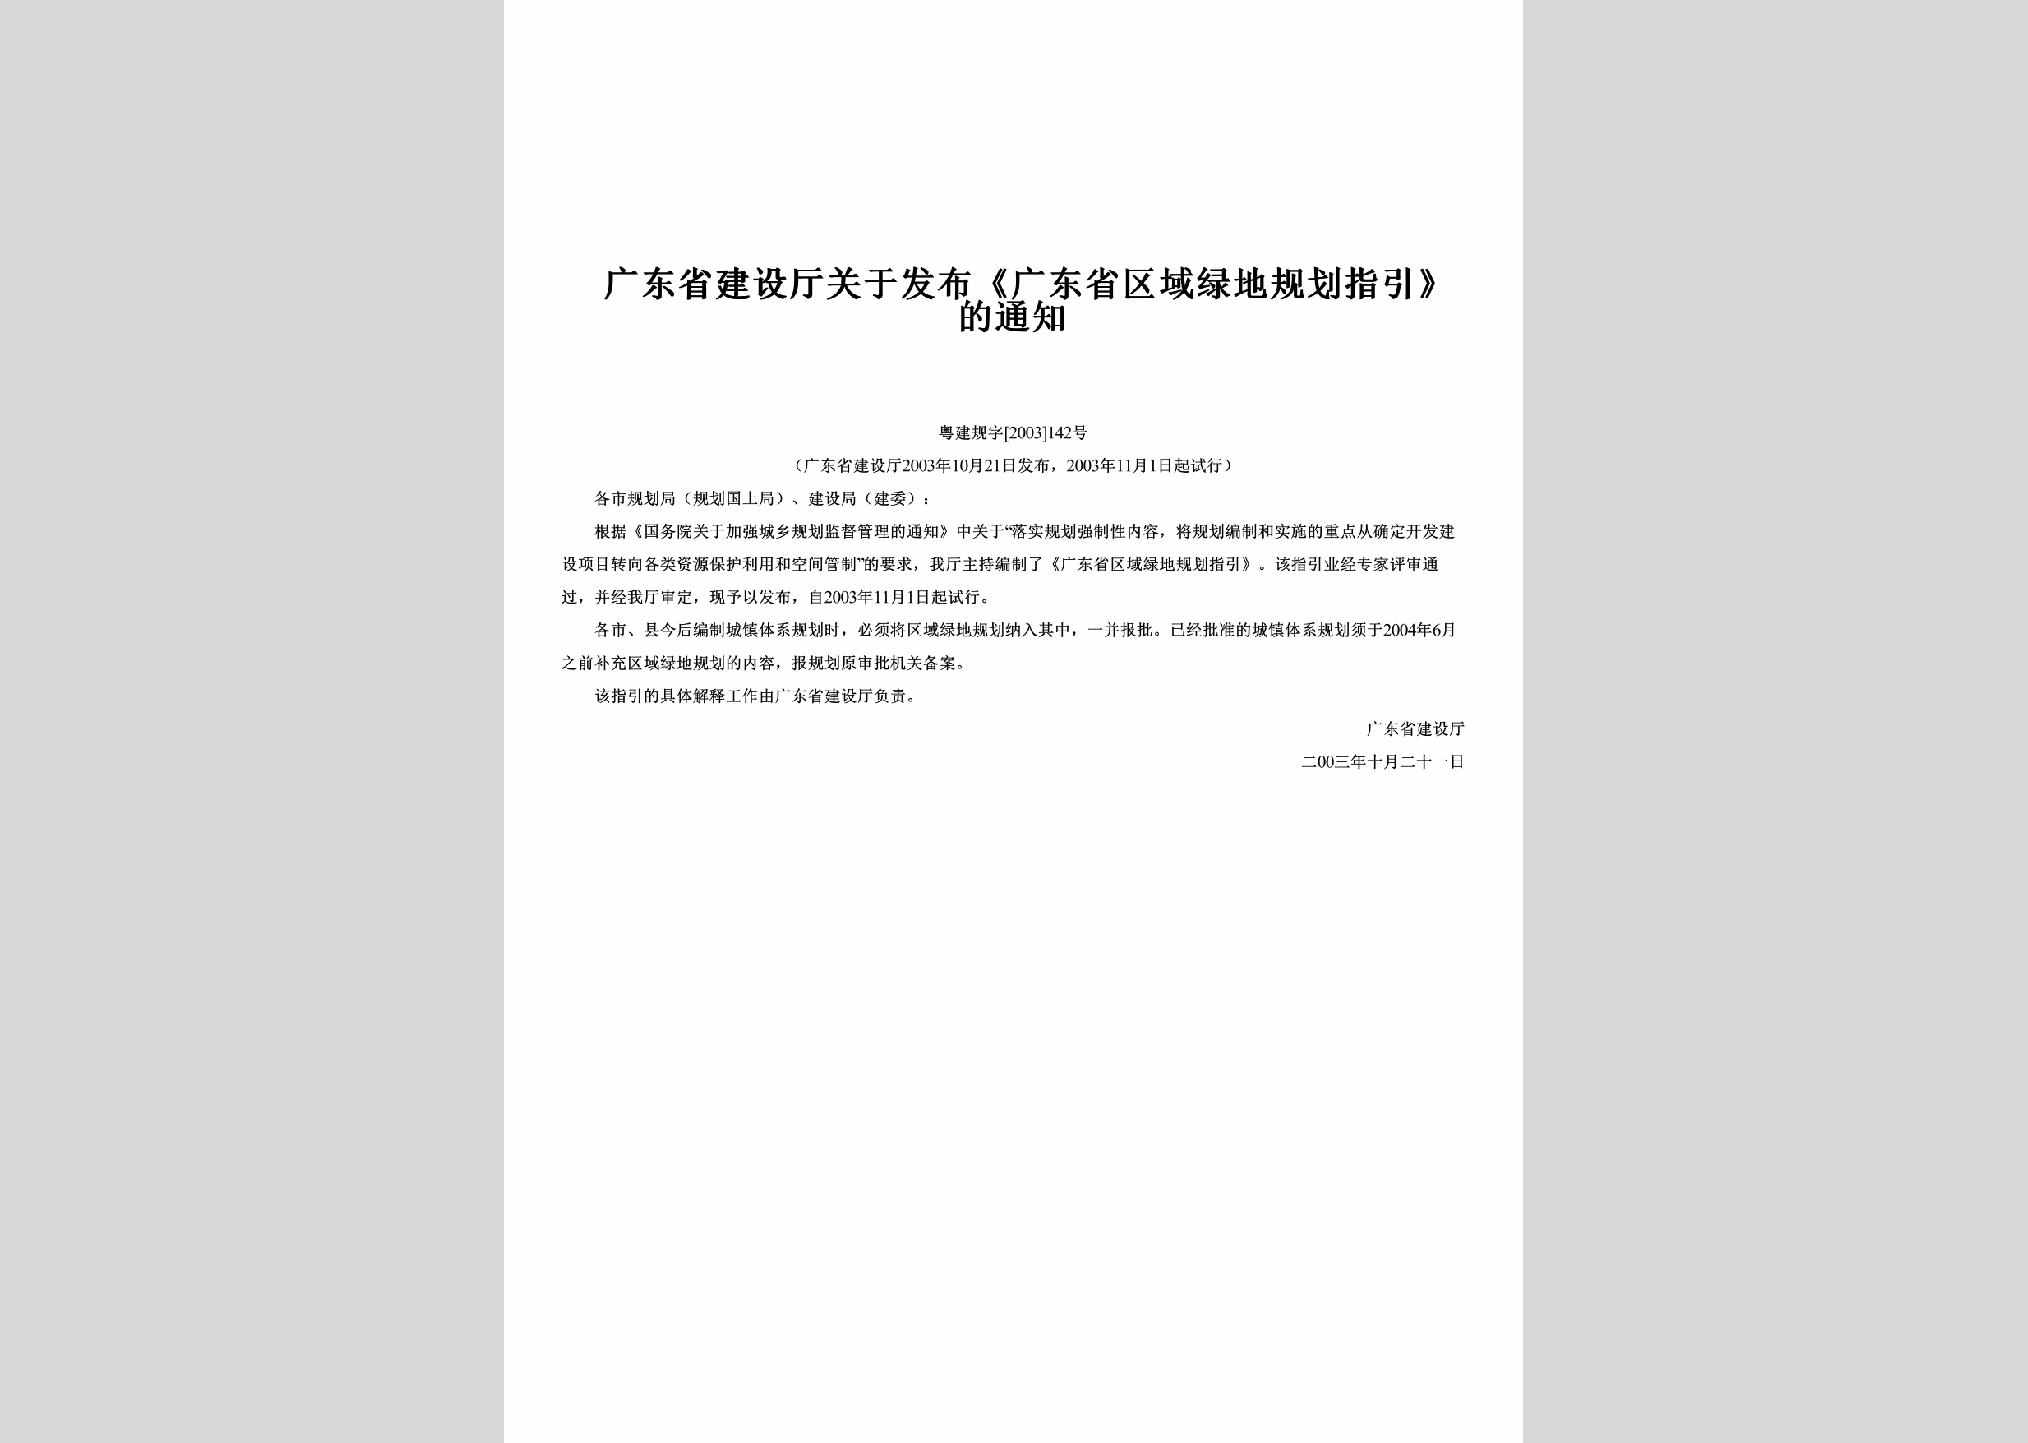 粤建规字[2003]142号：关于发布《广东省区域绿地规划指引》的通知